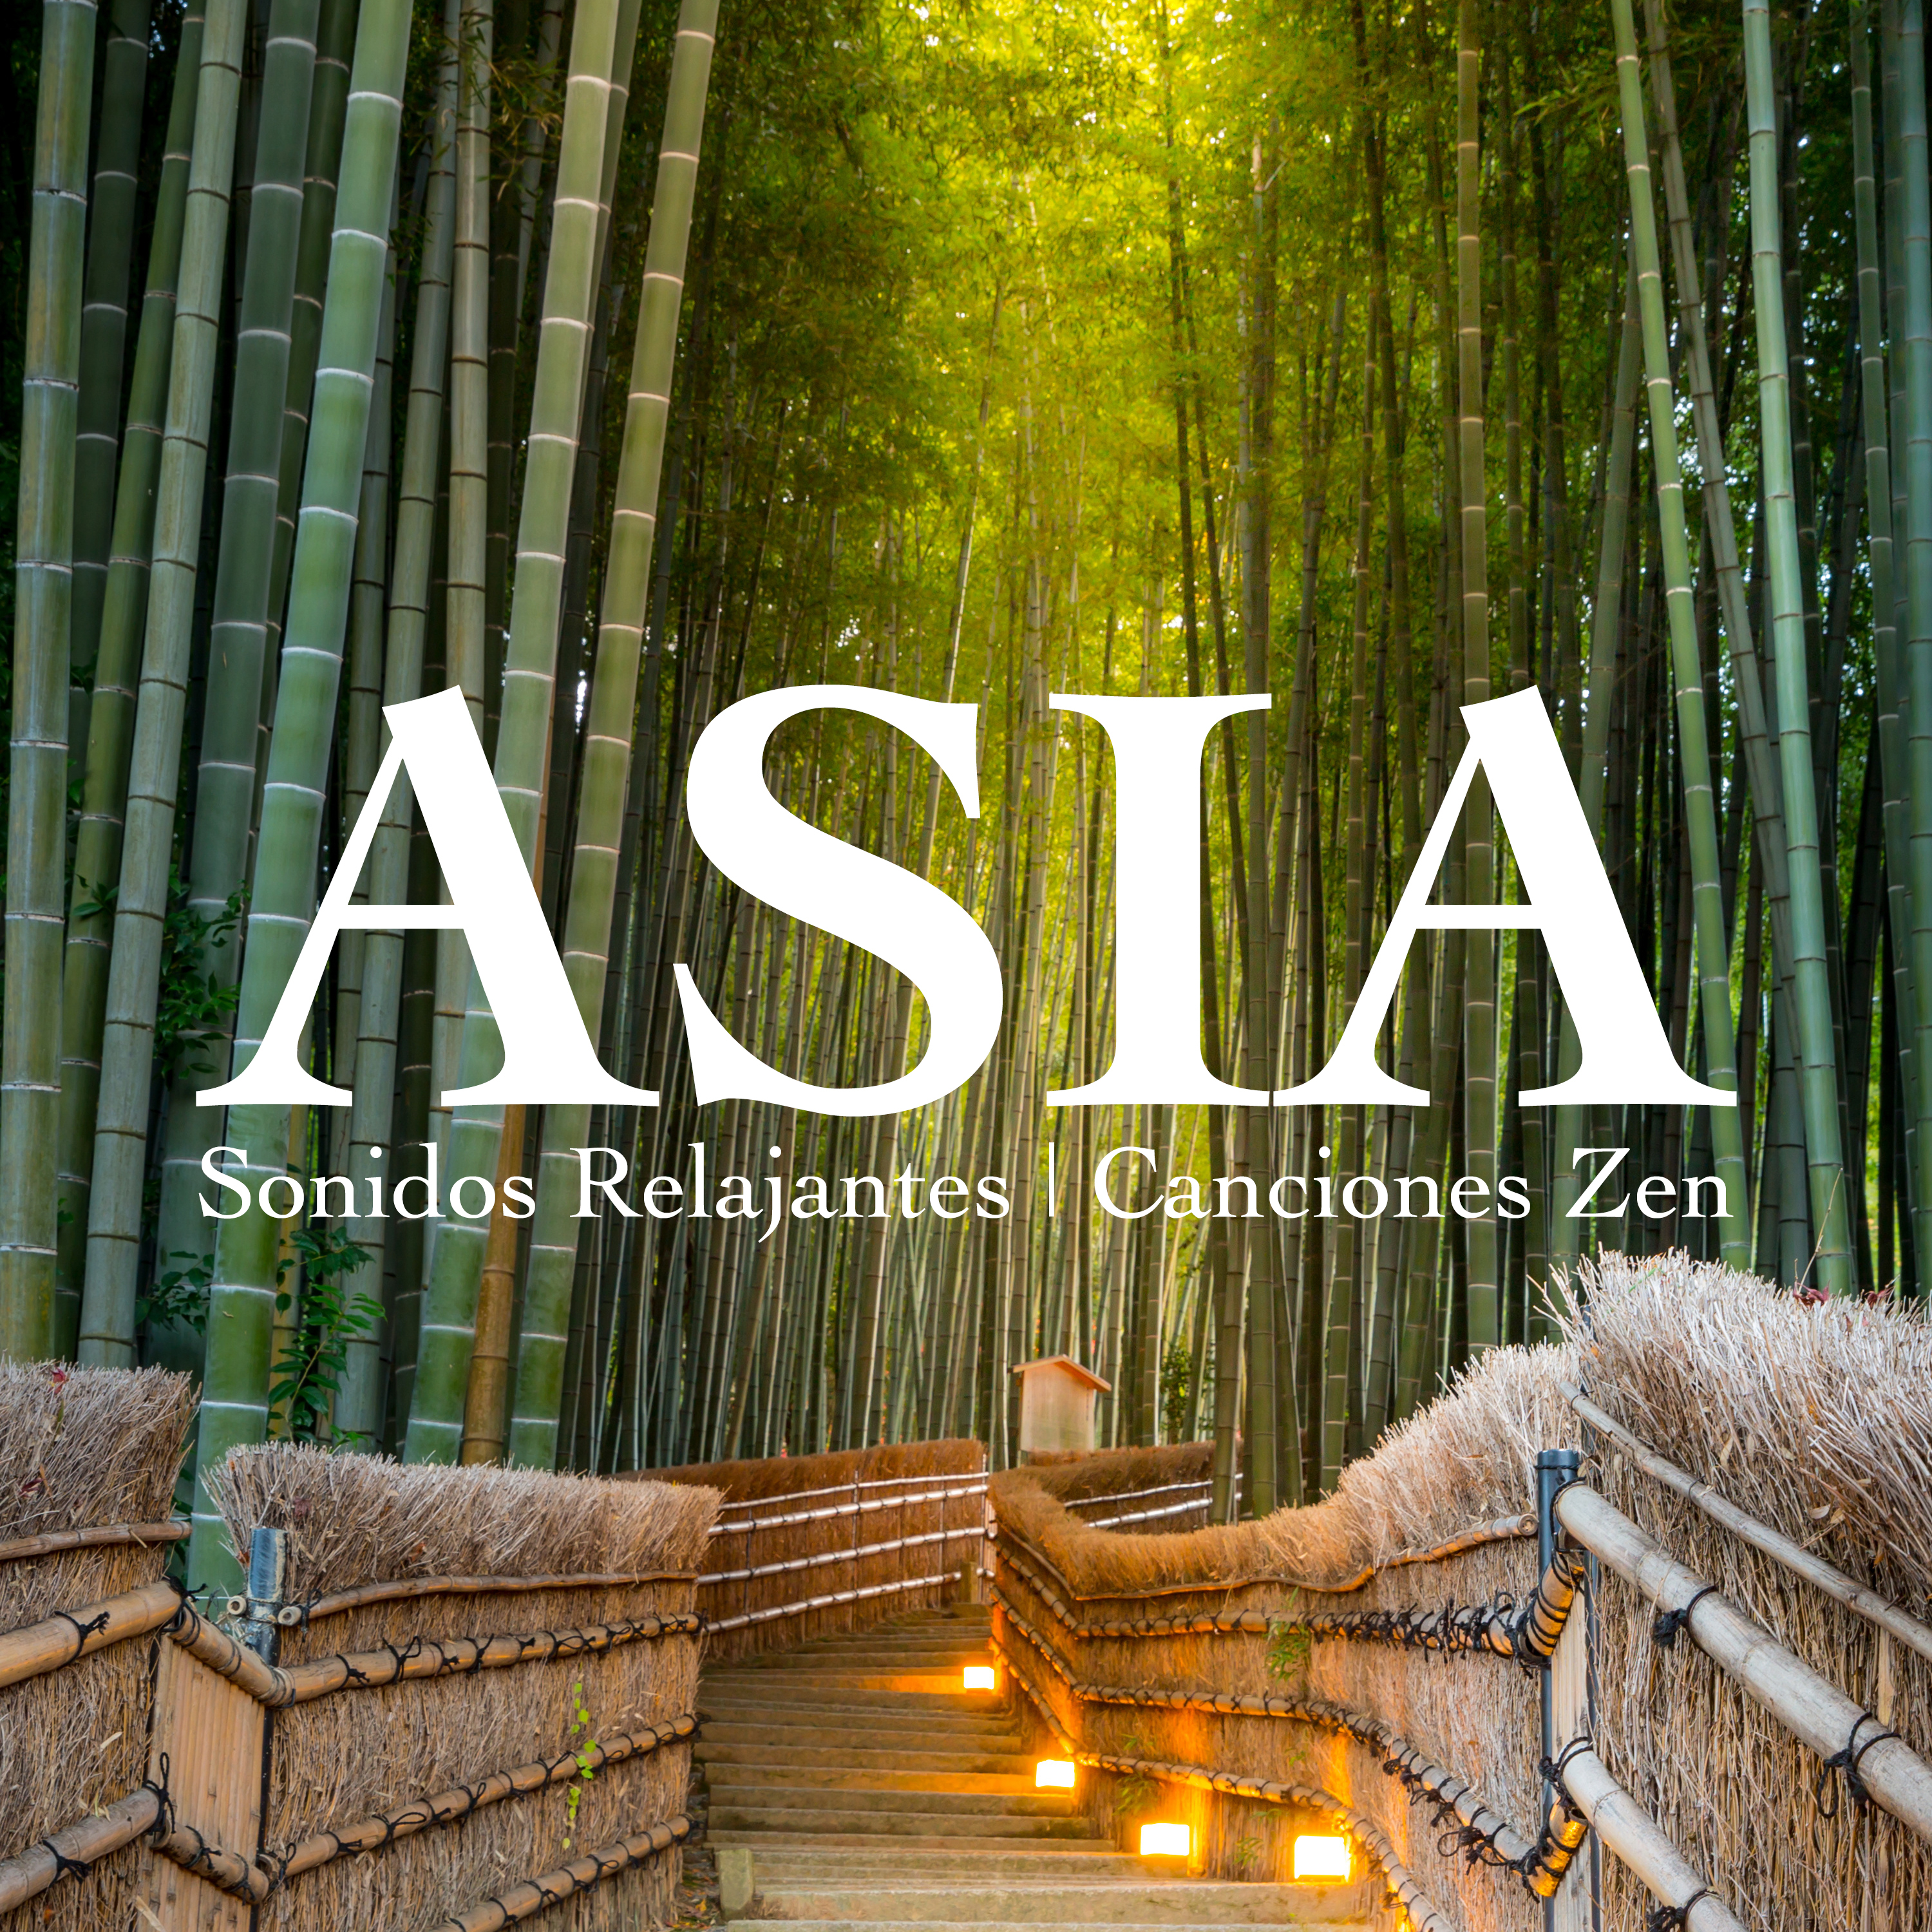 Asia  Sonidos Relajantes, Canciones Zen, Mu sica Instrumental